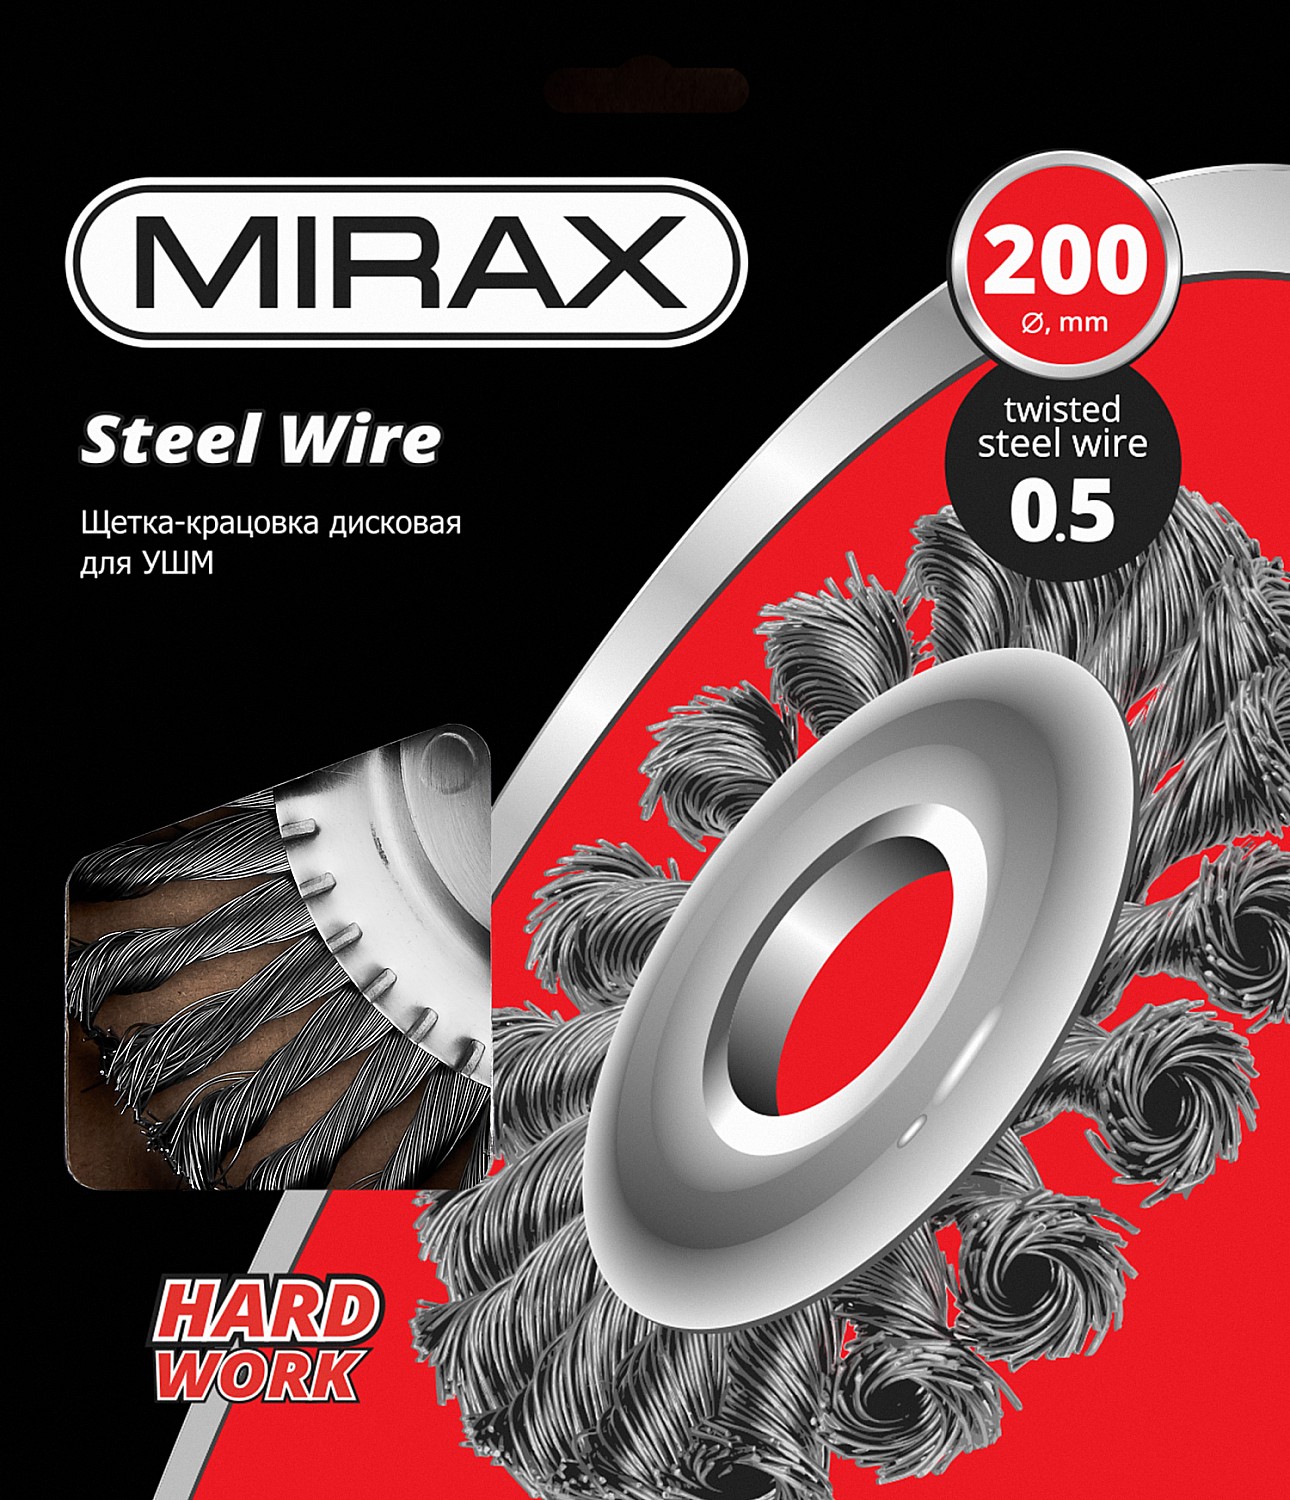 MIRAX 200 мм, жгутированная стальная проволока 0.5 мм, щетка дисковая для УШМ (35140-200)